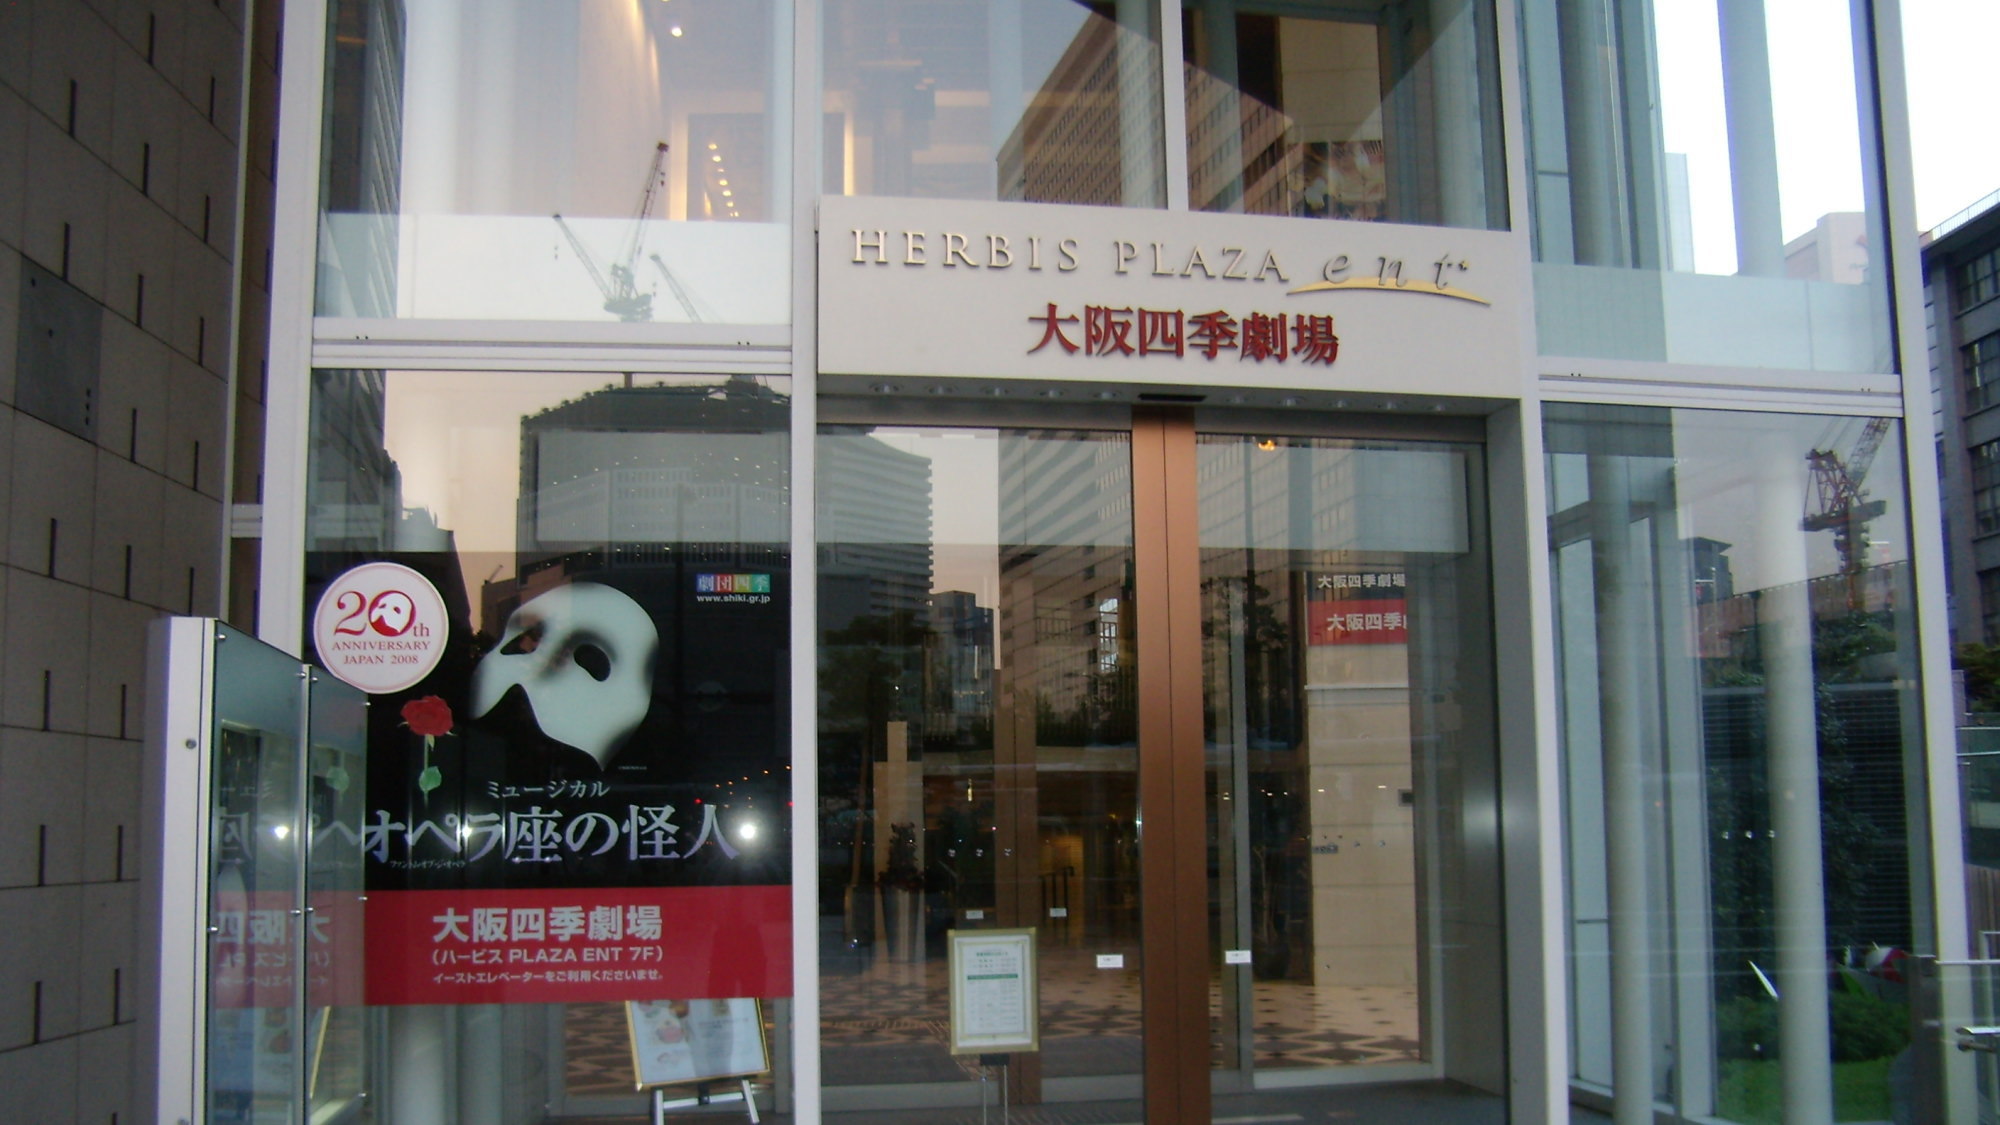 周辺施設：「大阪四季劇場」ハービス・エント7階に併設されている劇場。